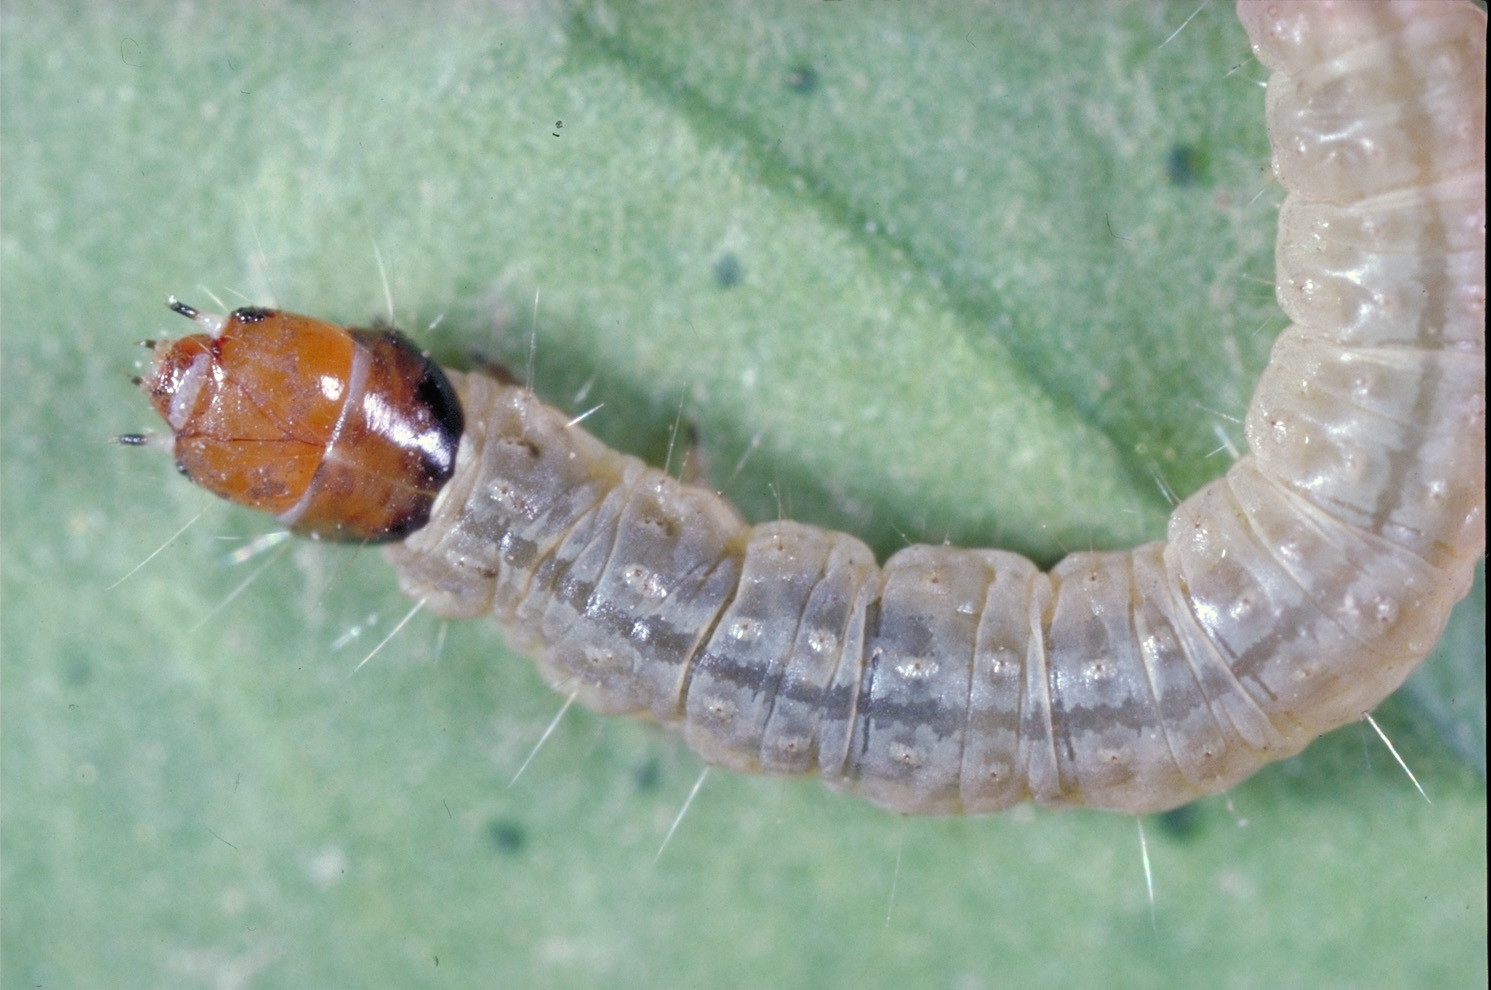 omnivorous leafroller larva